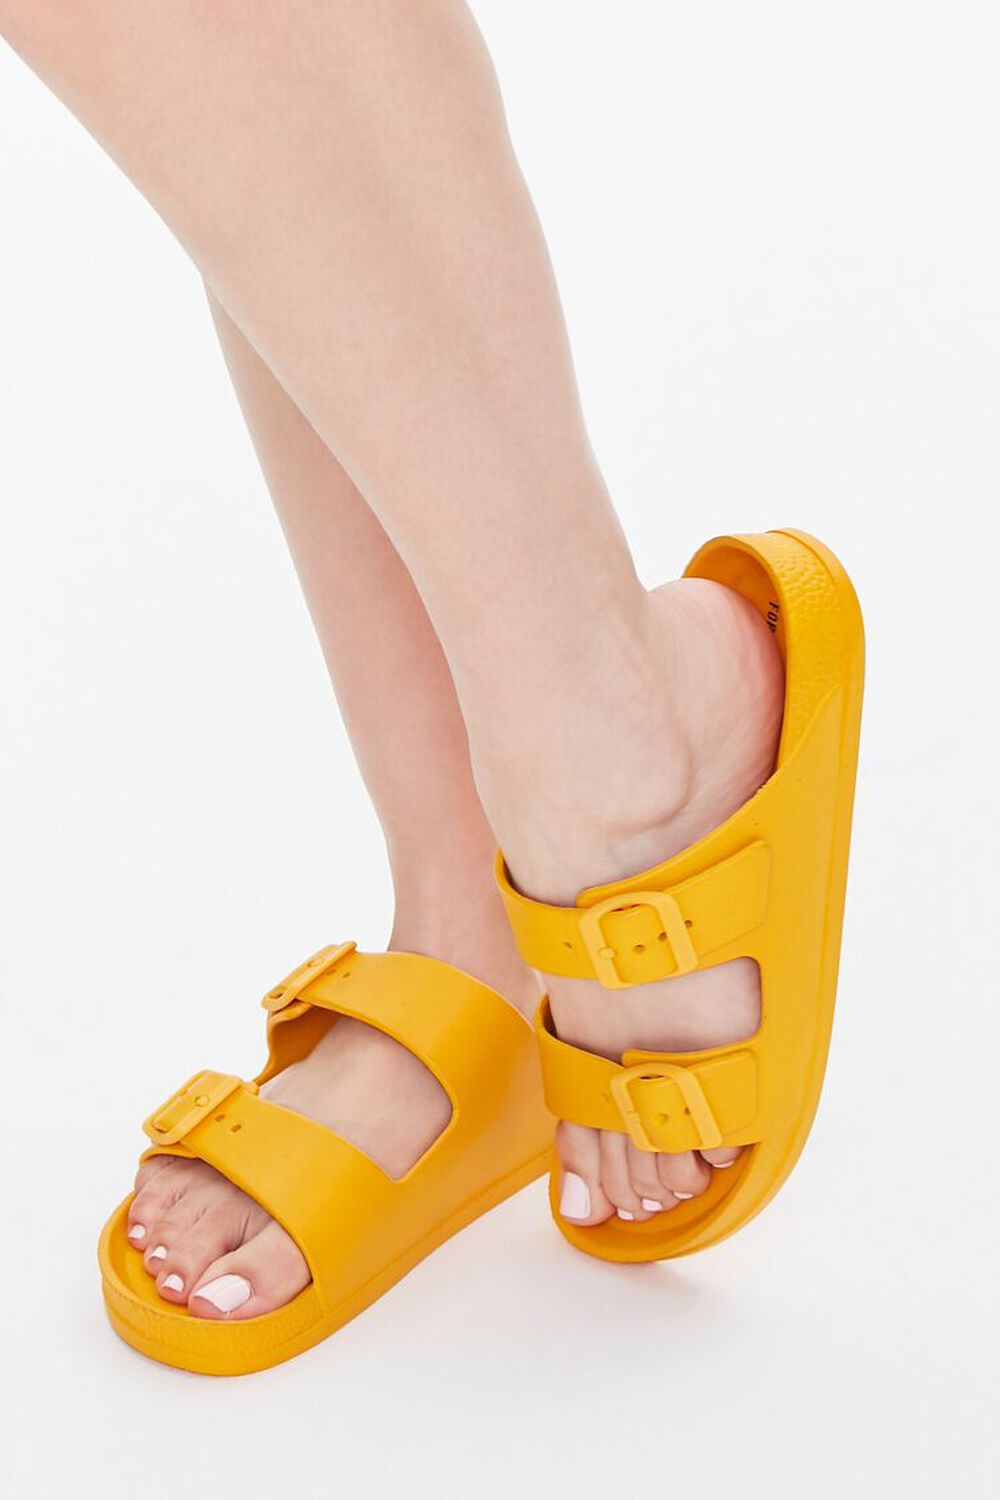 ORANGE Buckled Flatform Sandals, image 1